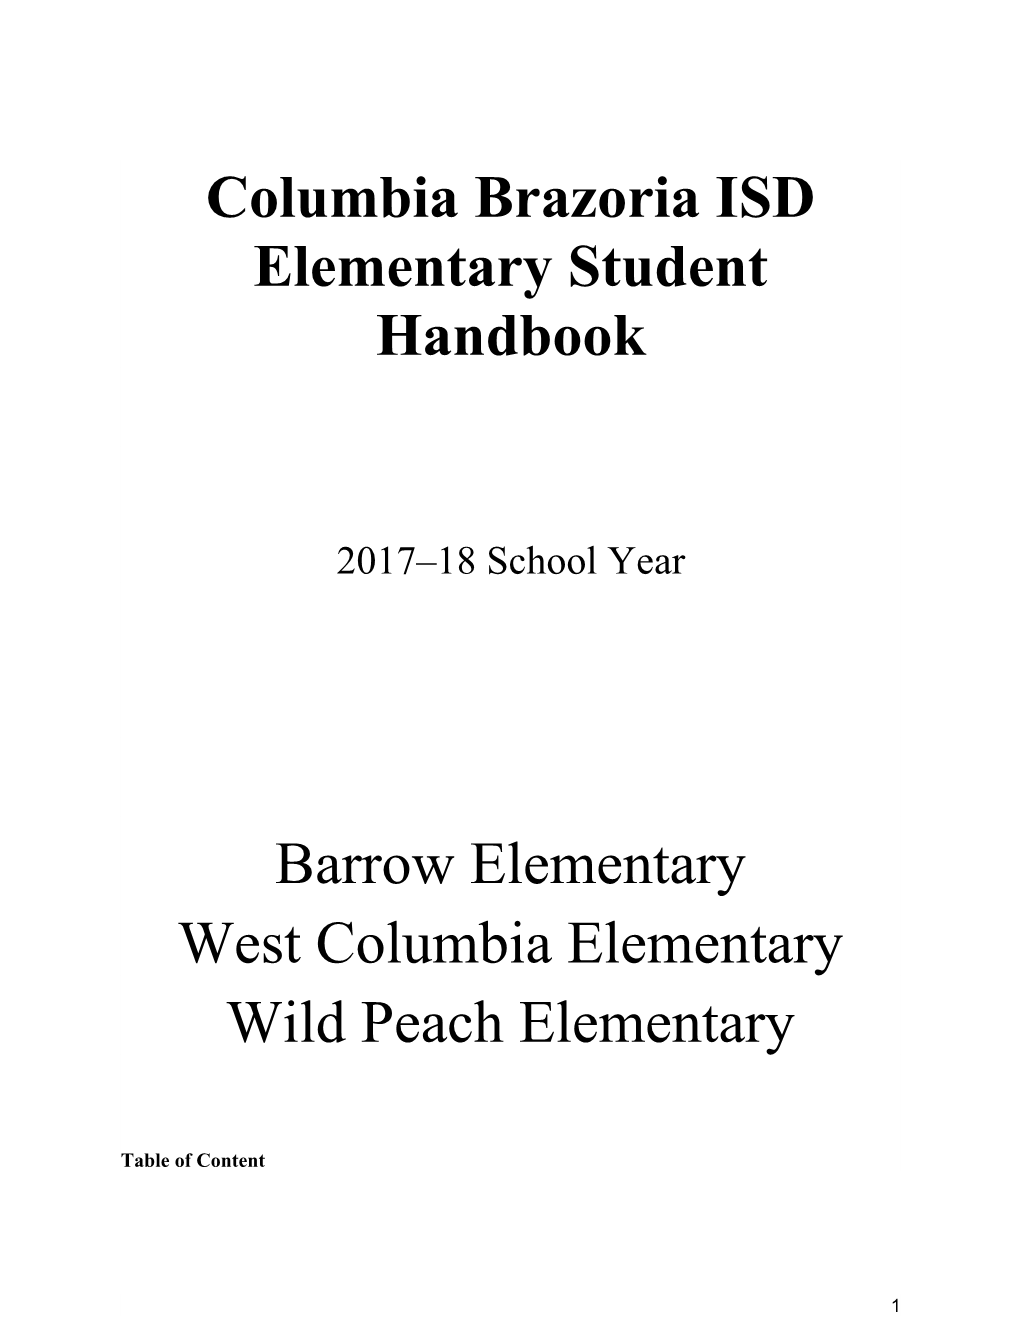 Columbia Brazoria ISD Elementary Student Handbook